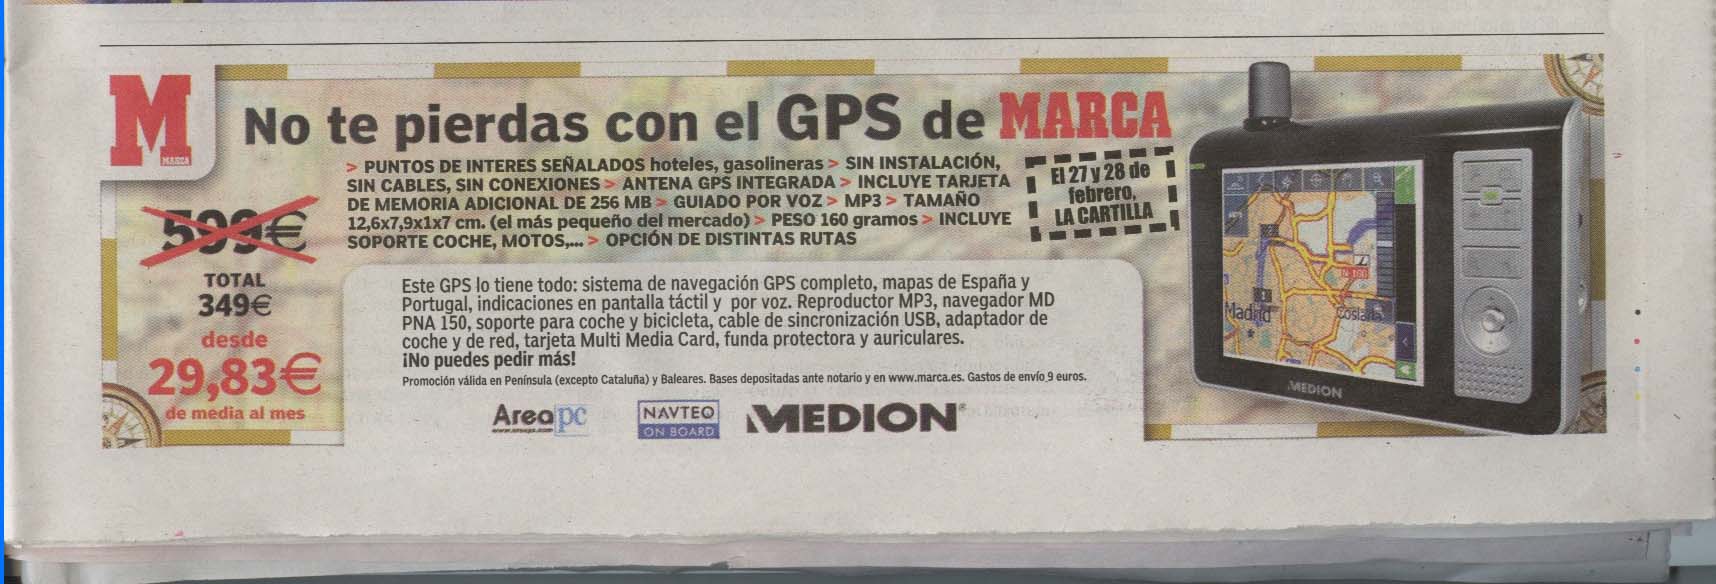 Nueva promocion del Marca, GPS que tal es?